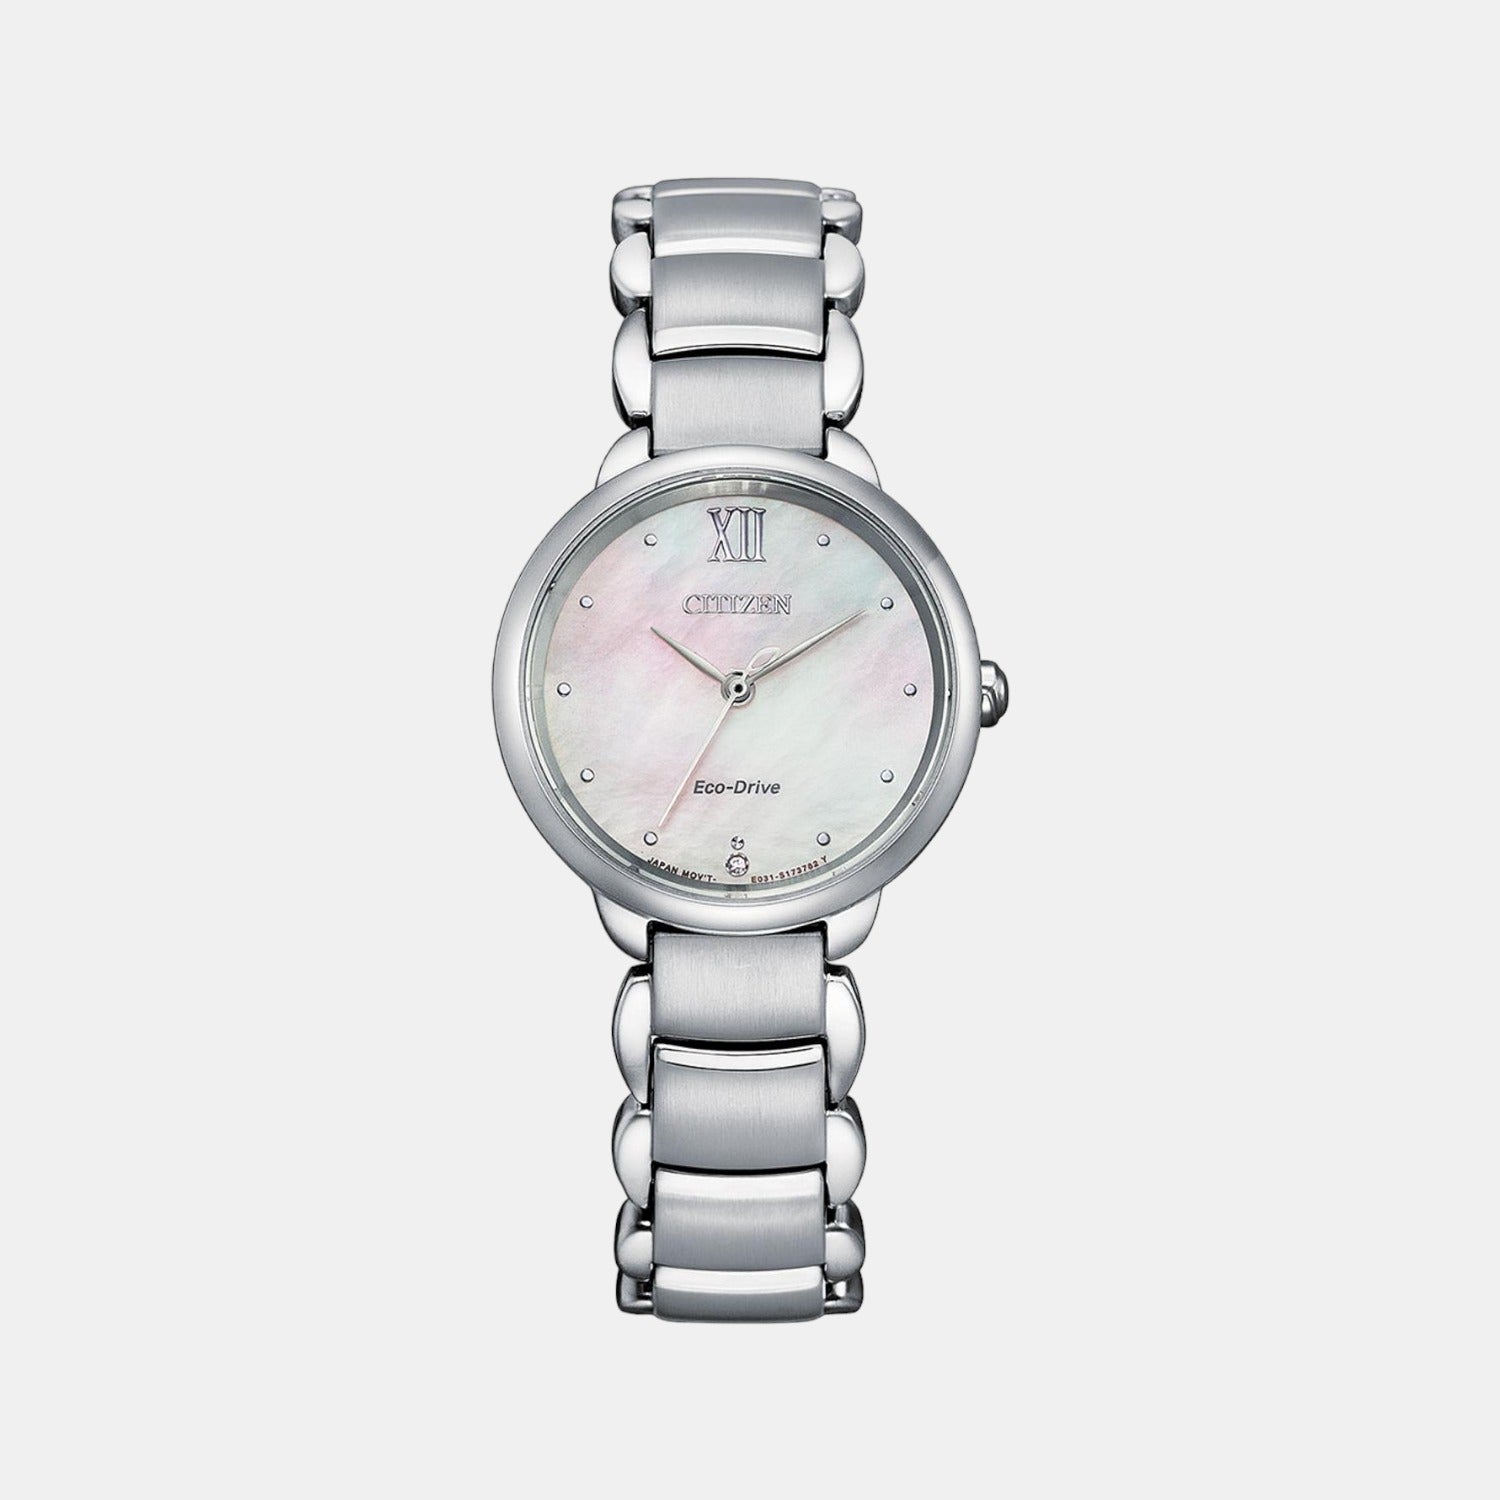 Stainless Steel Women's Digital Watch | Stainless Steel Watch Bracelet Set  - 5pcs - Aliexpress